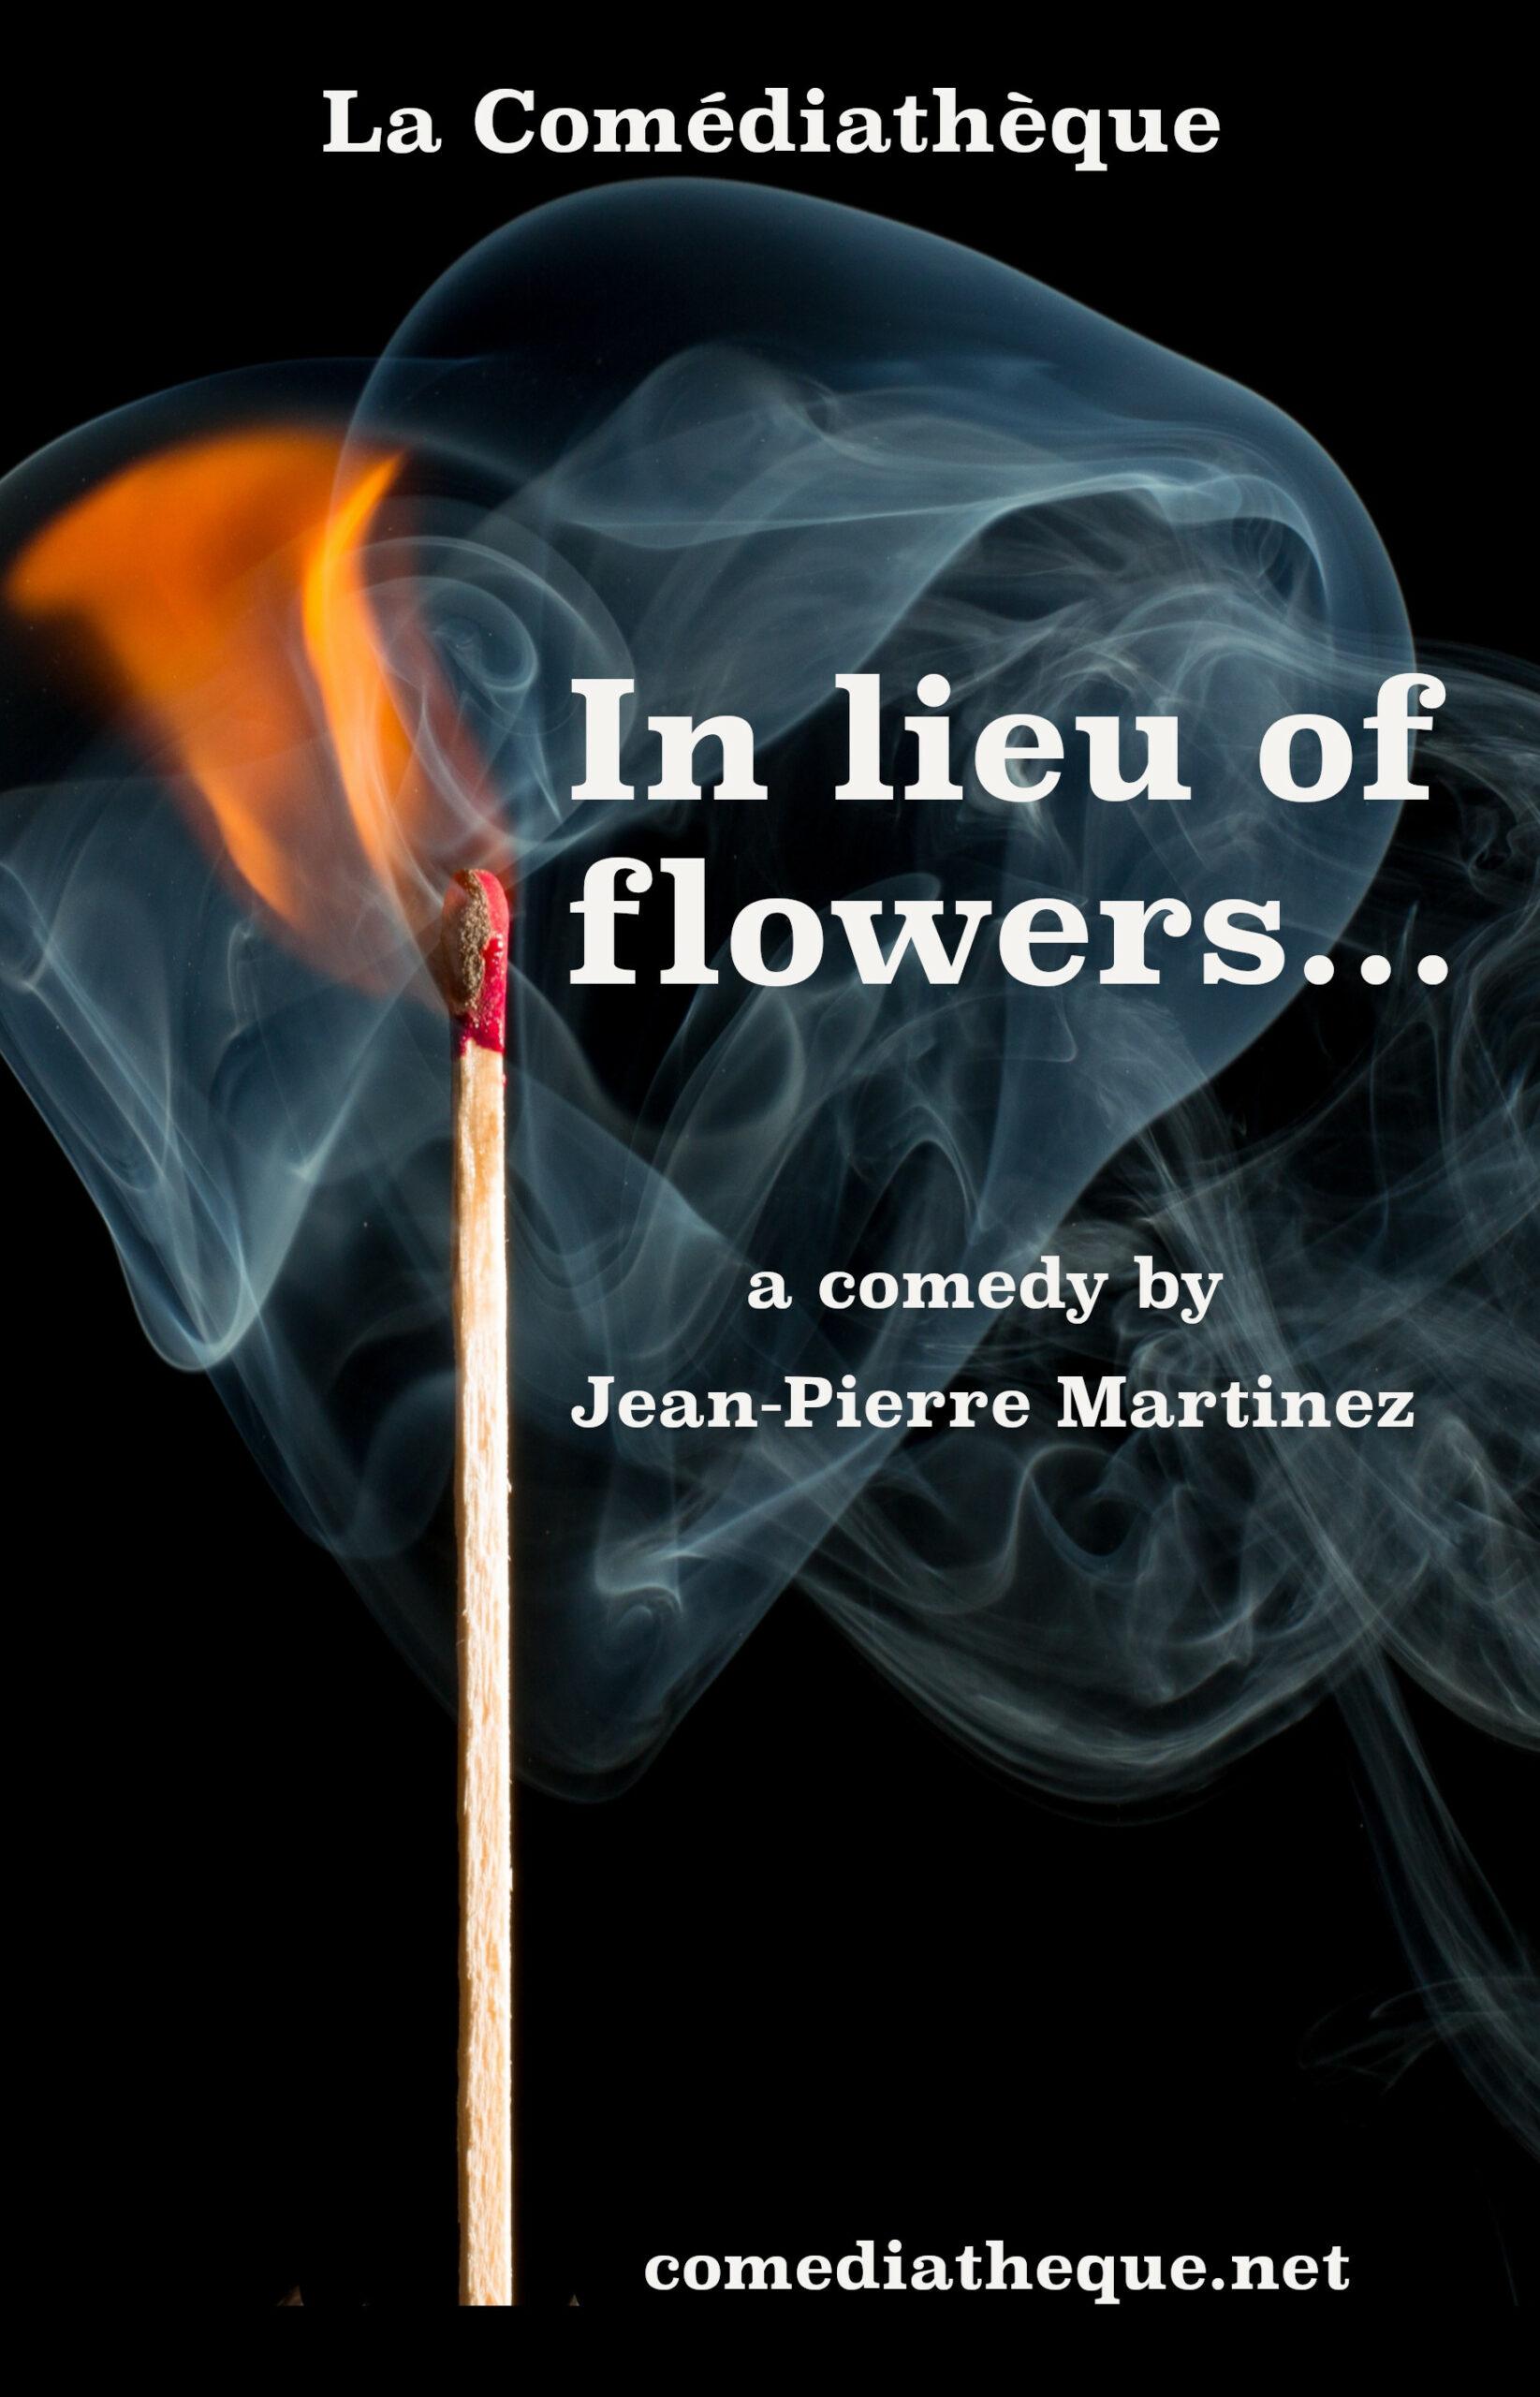 In lieu of flower by jean-Pierre Martinez